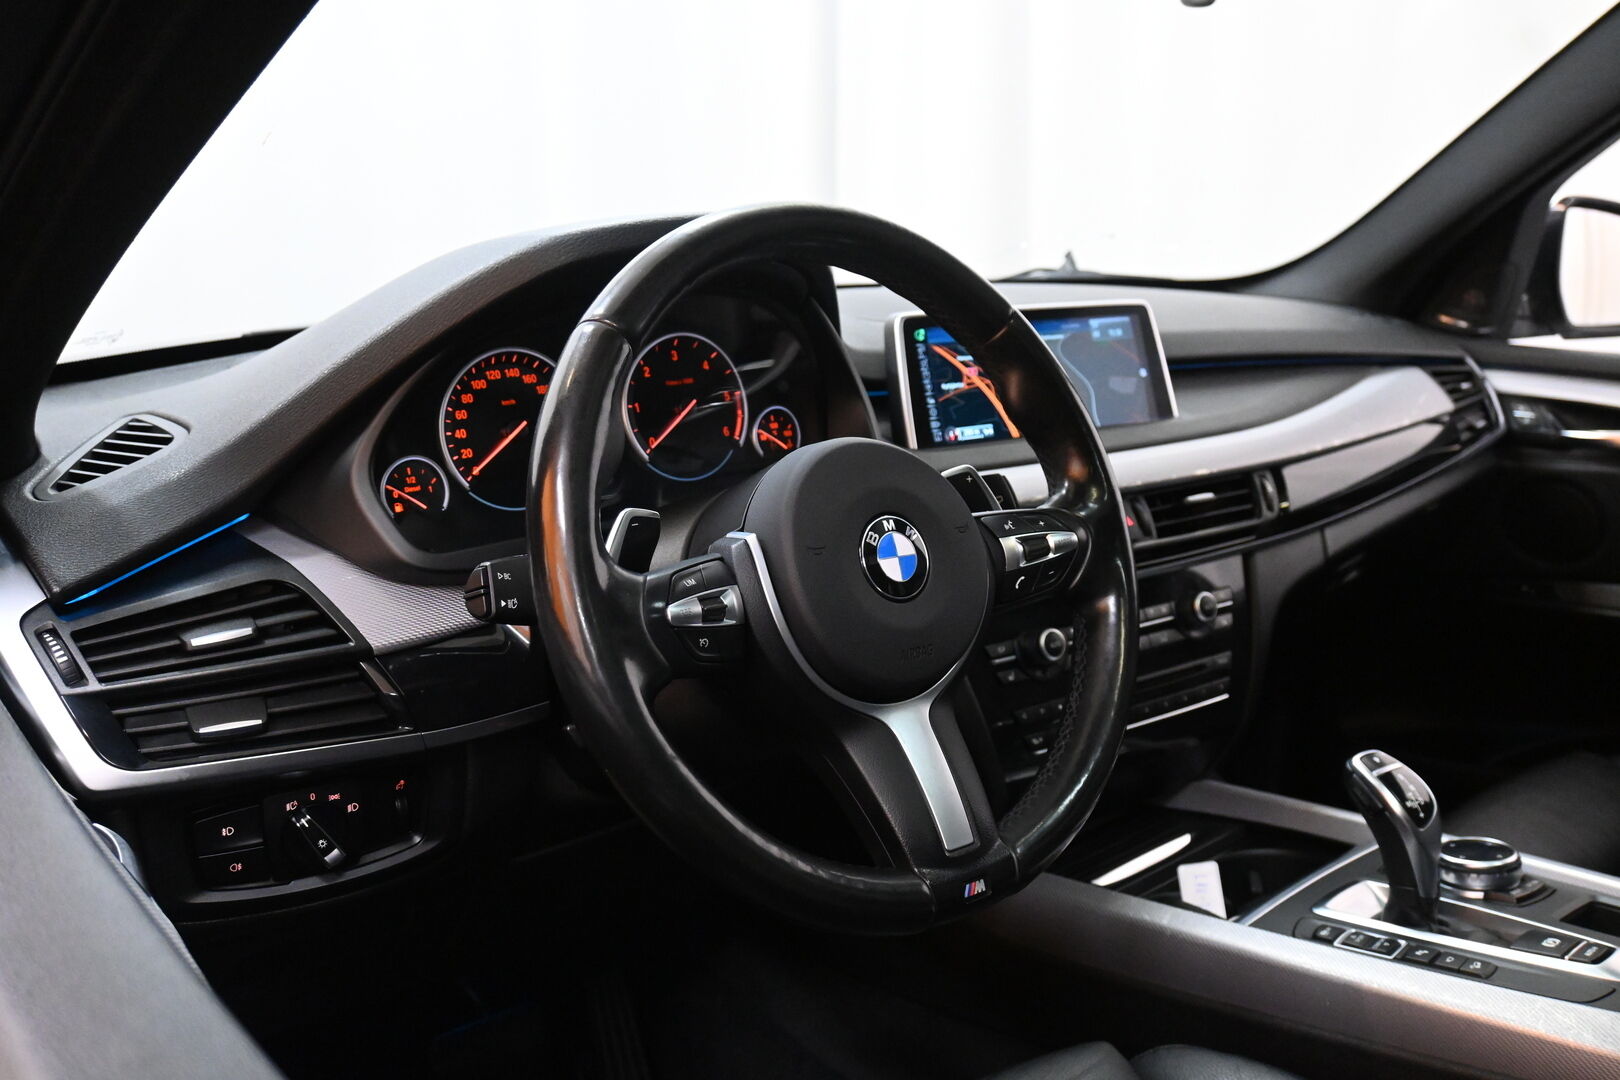 Valkoinen Maastoauto, BMW X5 – LRX-306